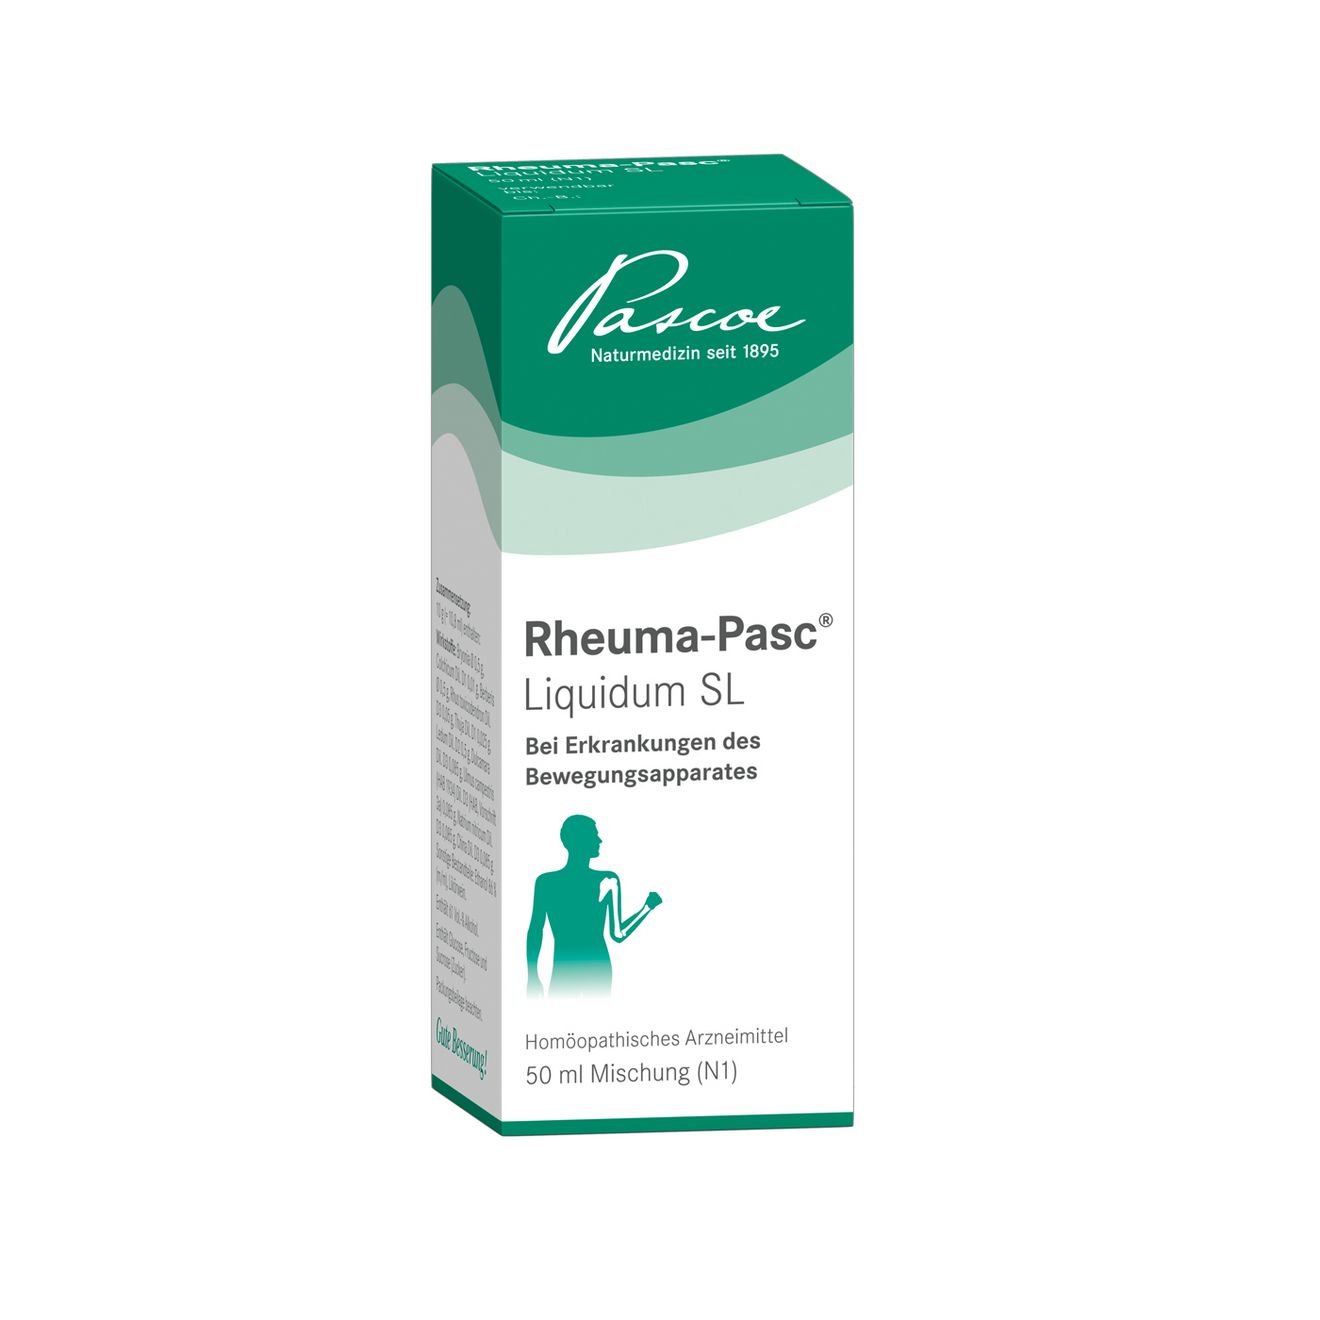 Rheuma-Pasc Liquidum SL 50 ml Packshot PZN 00423924